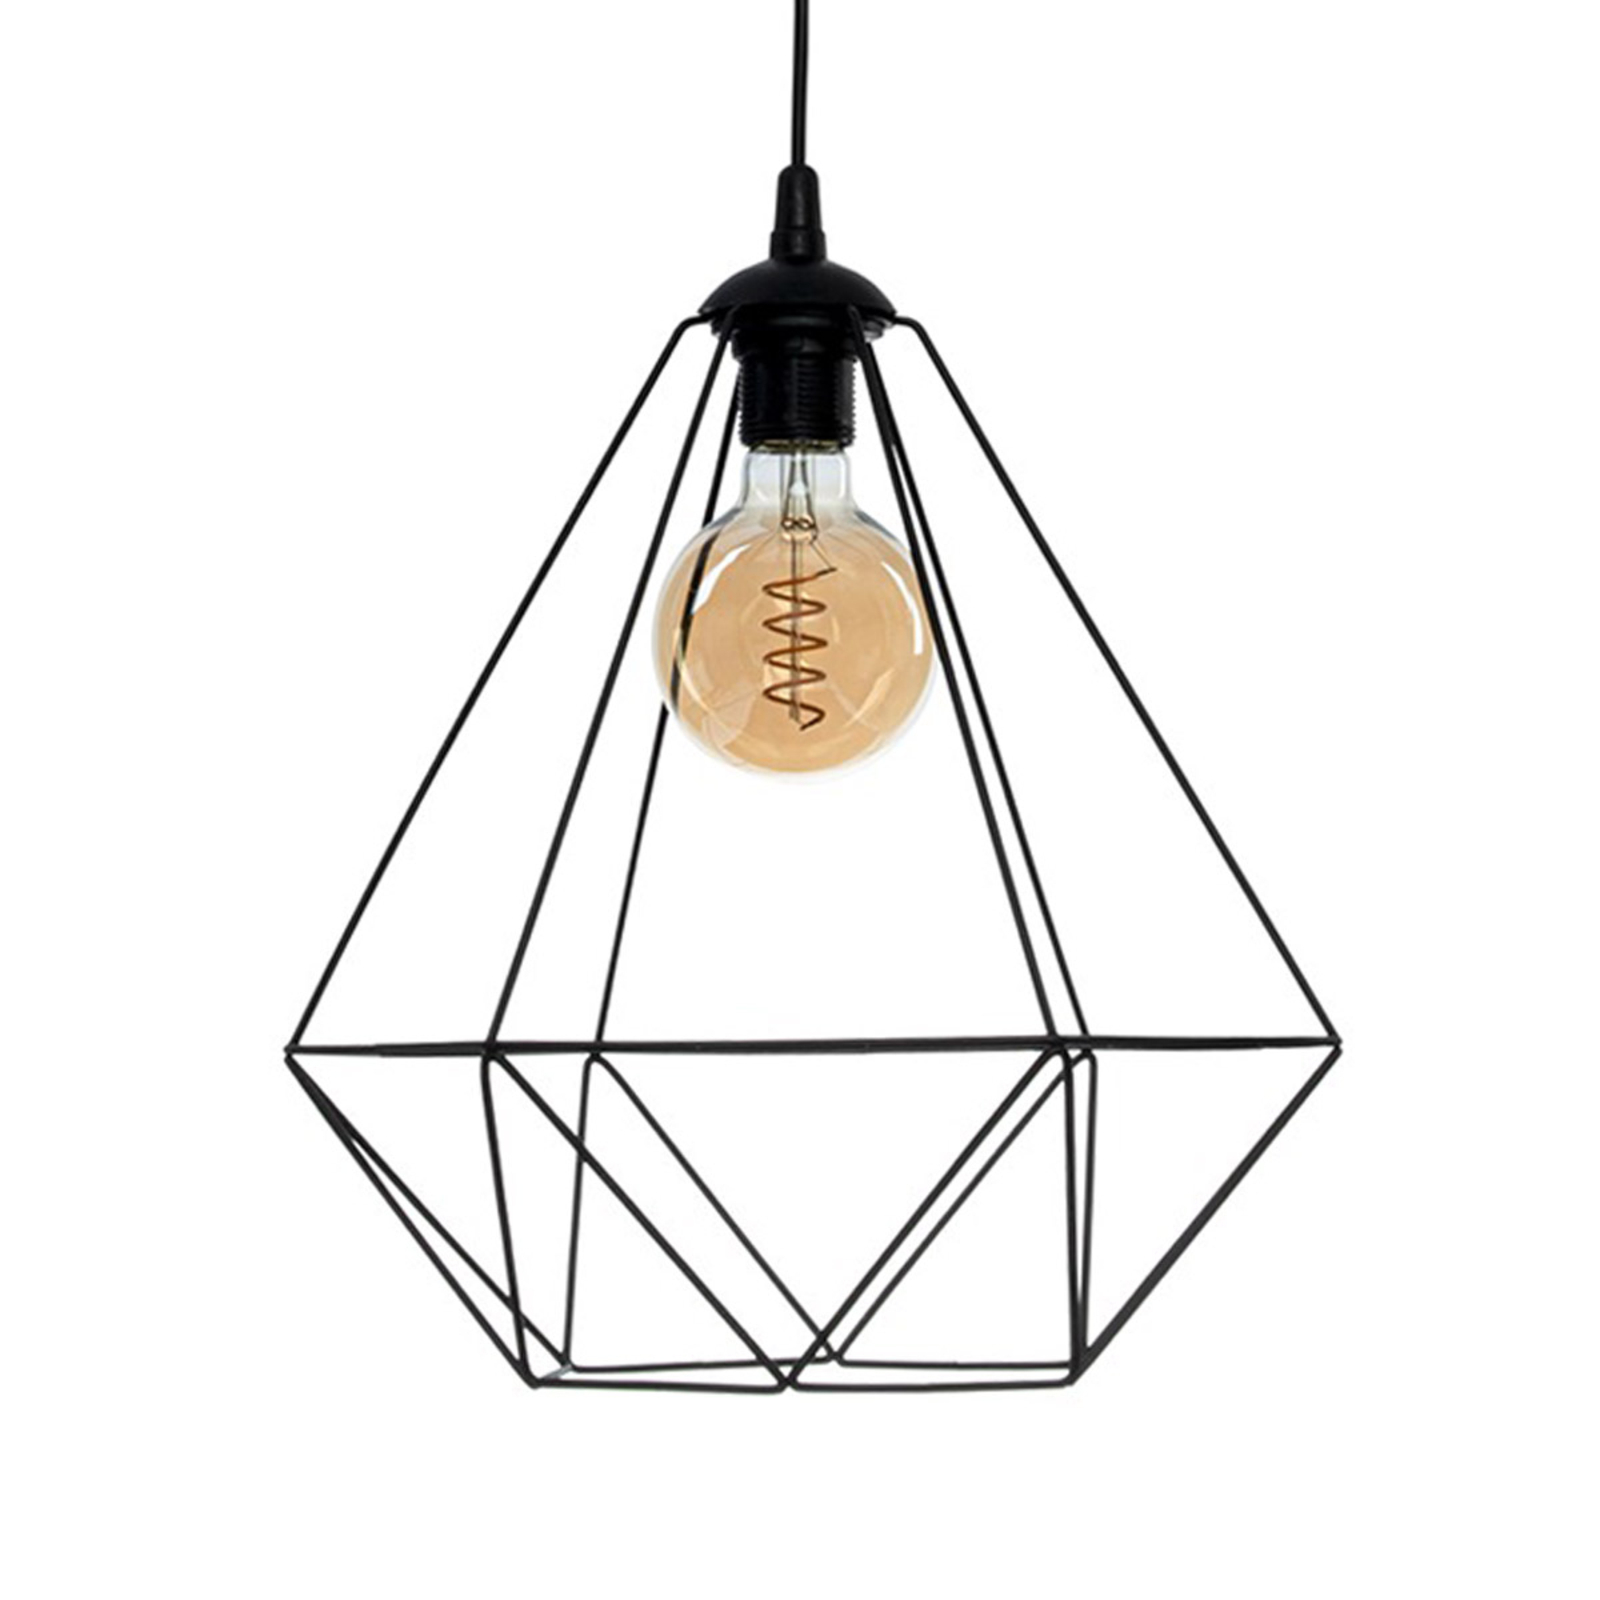 Basket hængelampe, sort, 1 lyskilde